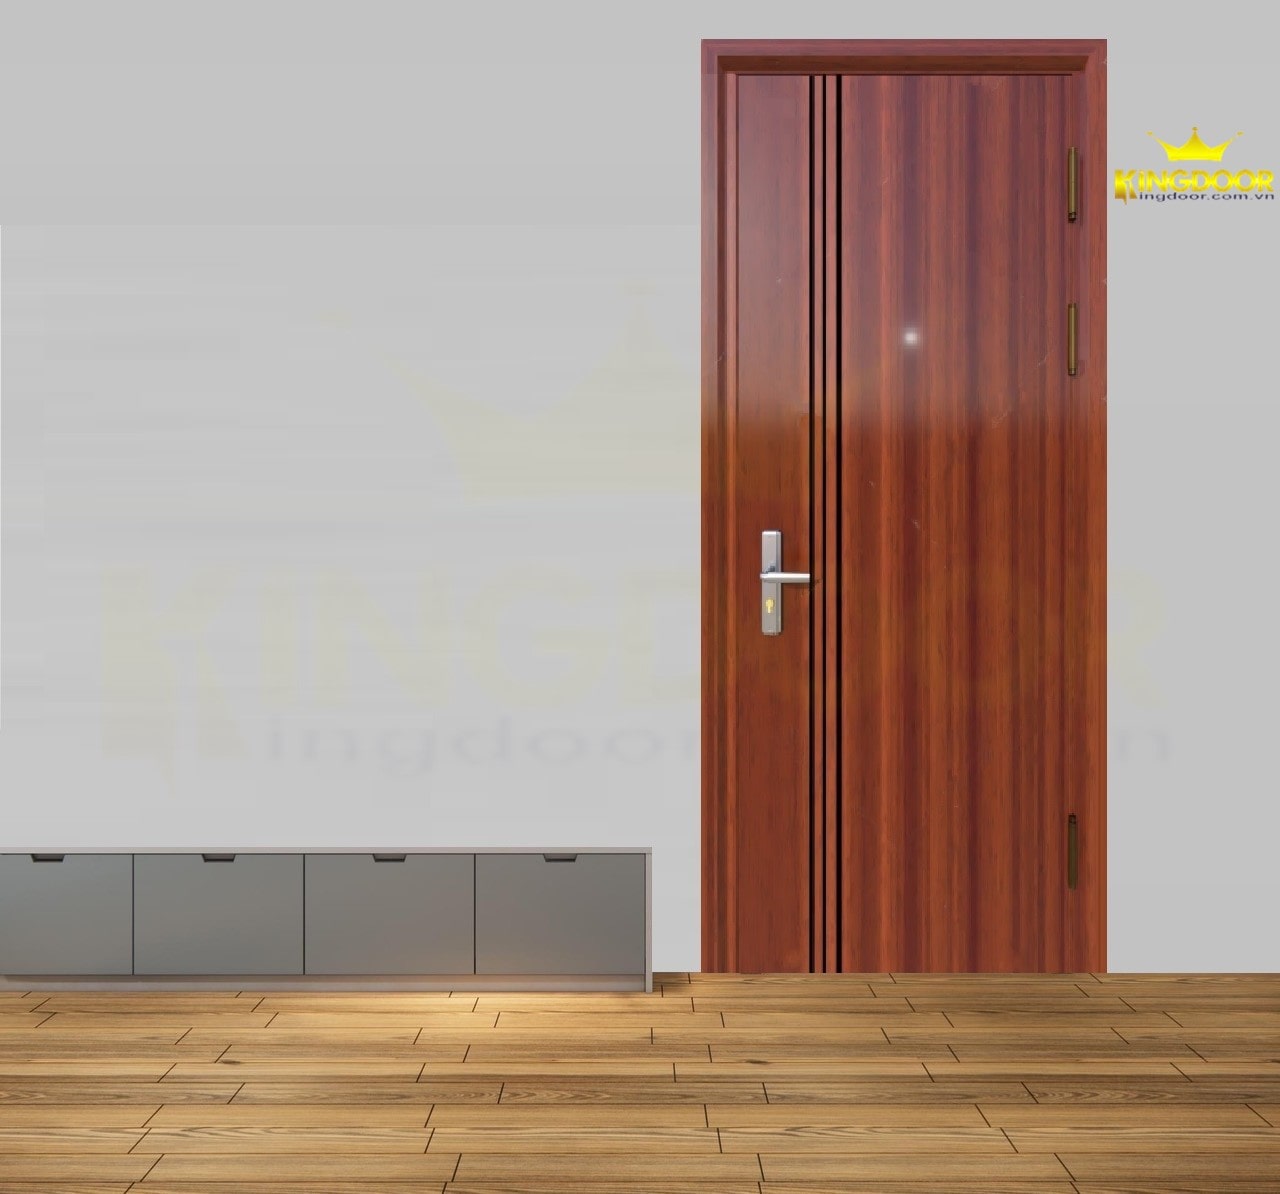 Giá cửa gỗ vân gỗ Đà Lạt | Cửa sổ chính hãng King Door Cua-thep-van-go-1-canh-1-min